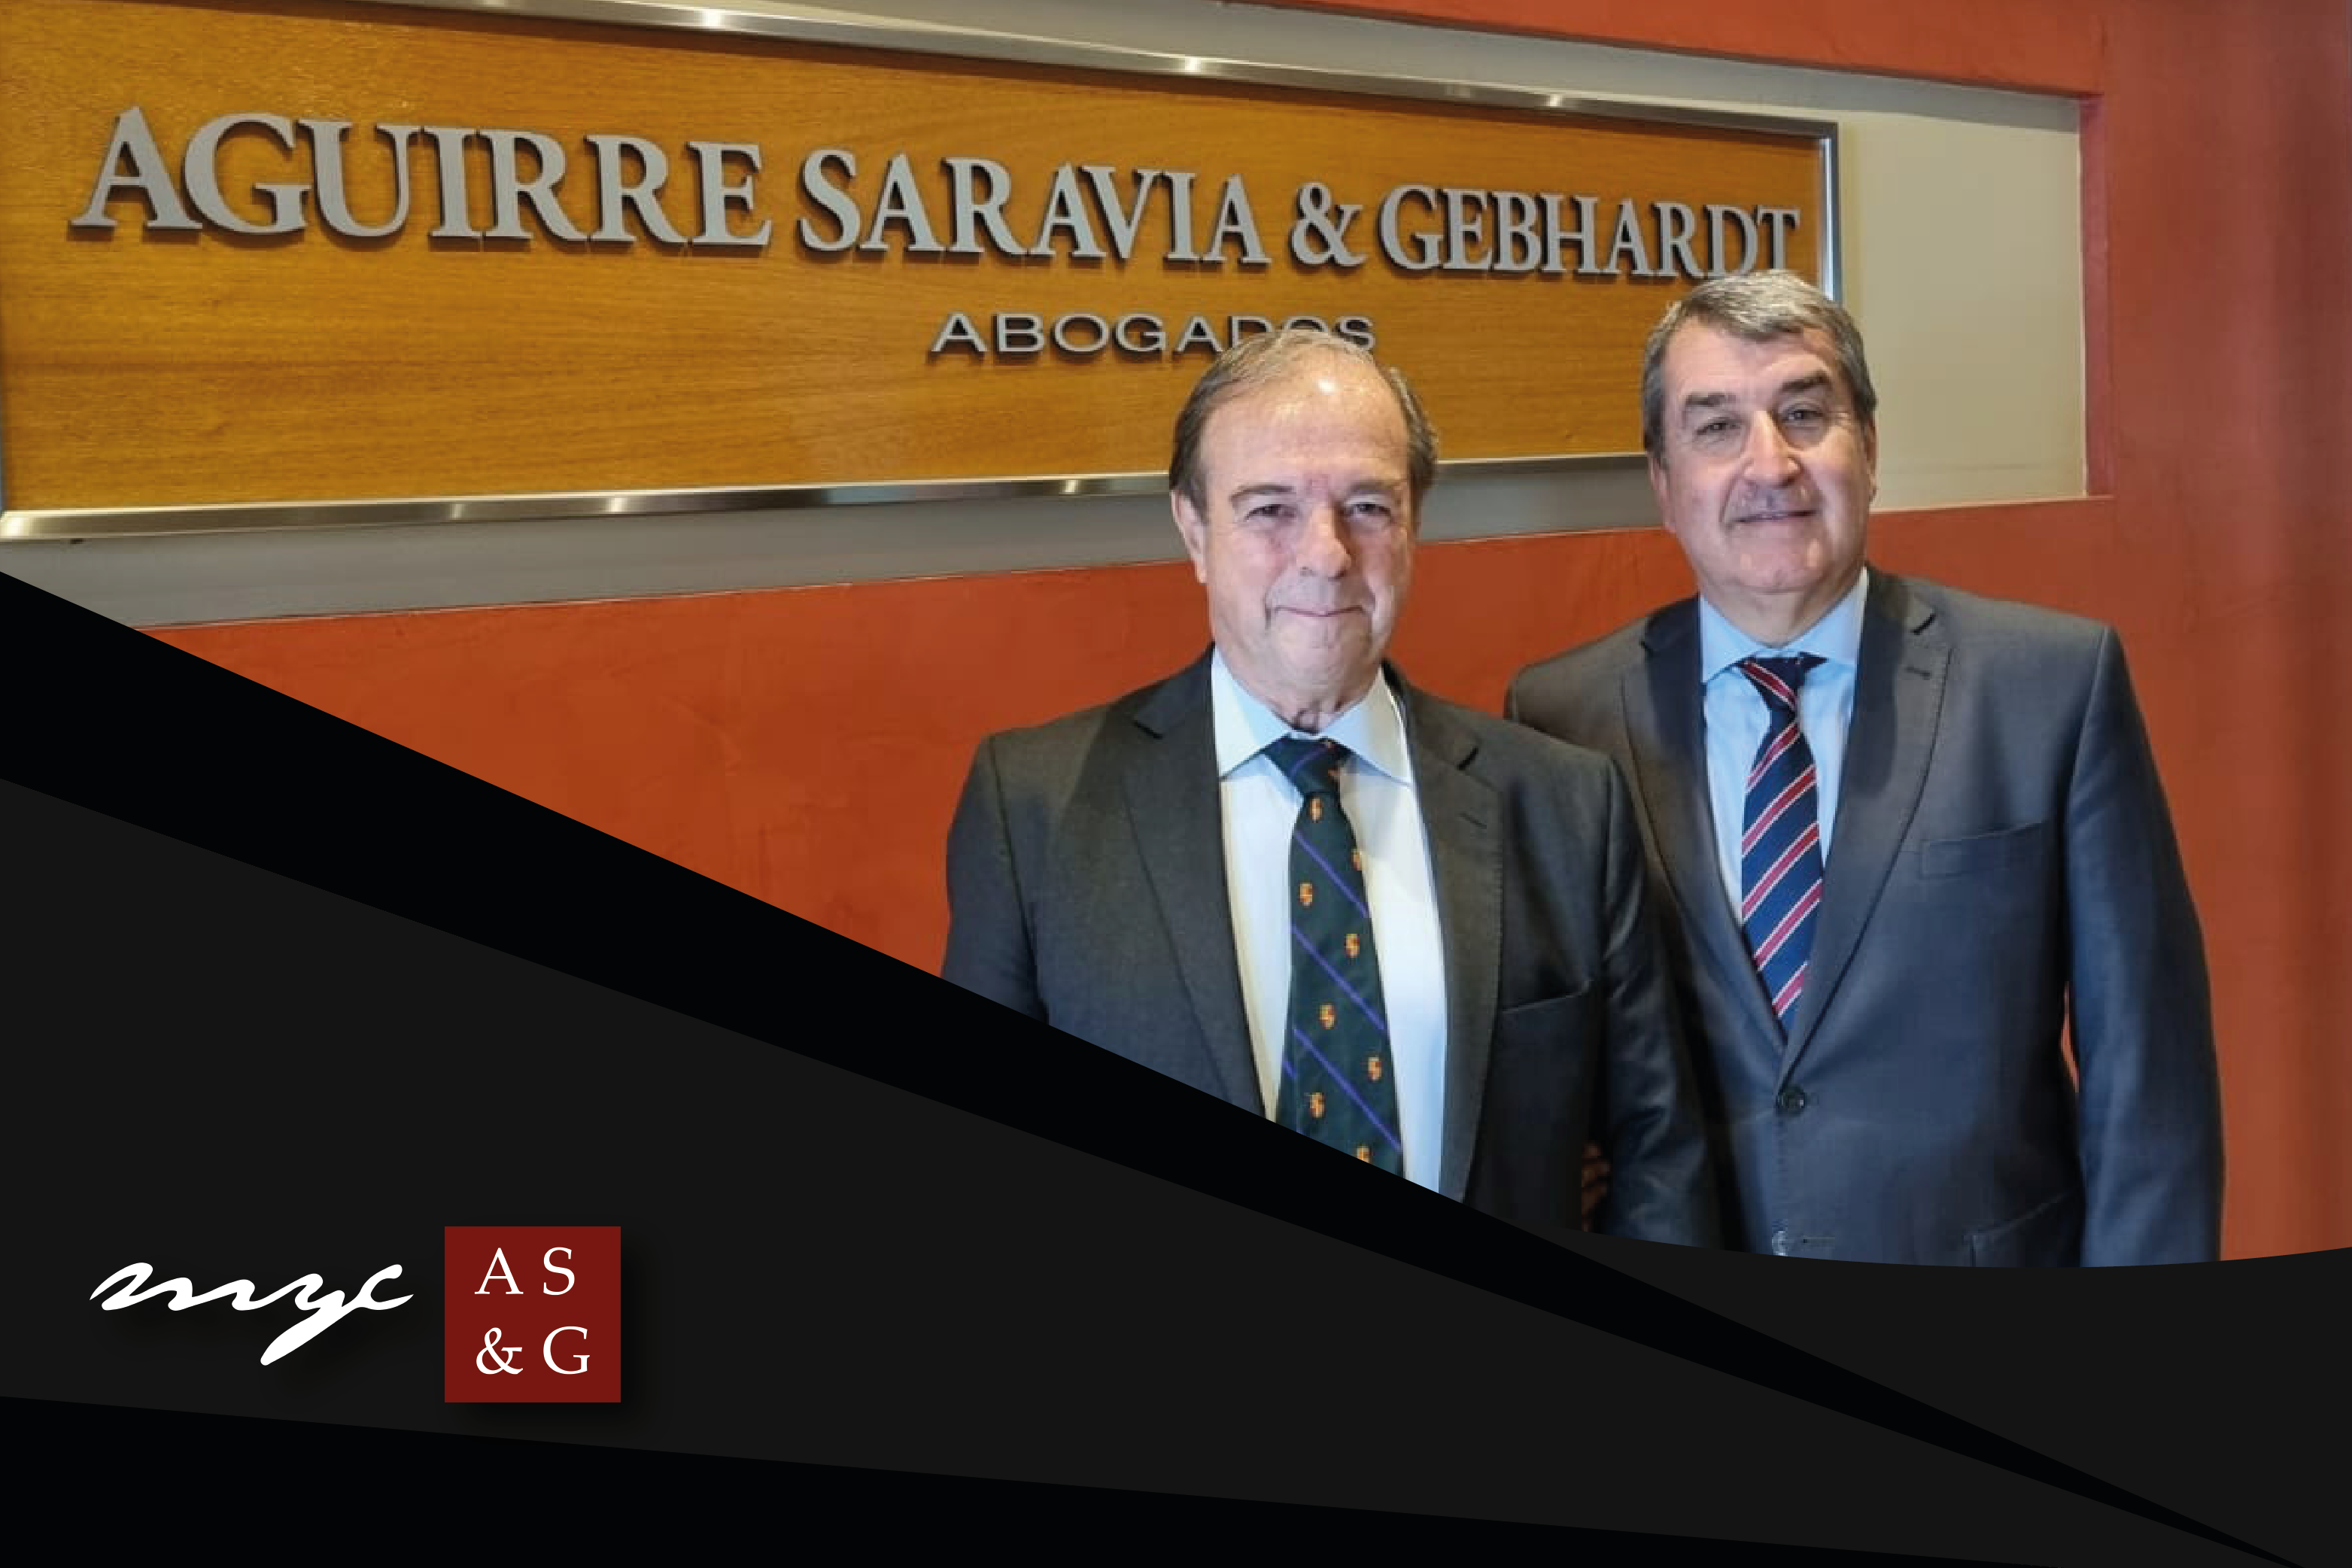 Aguirre Saravia & Ghebardt, Márquez y Calderón